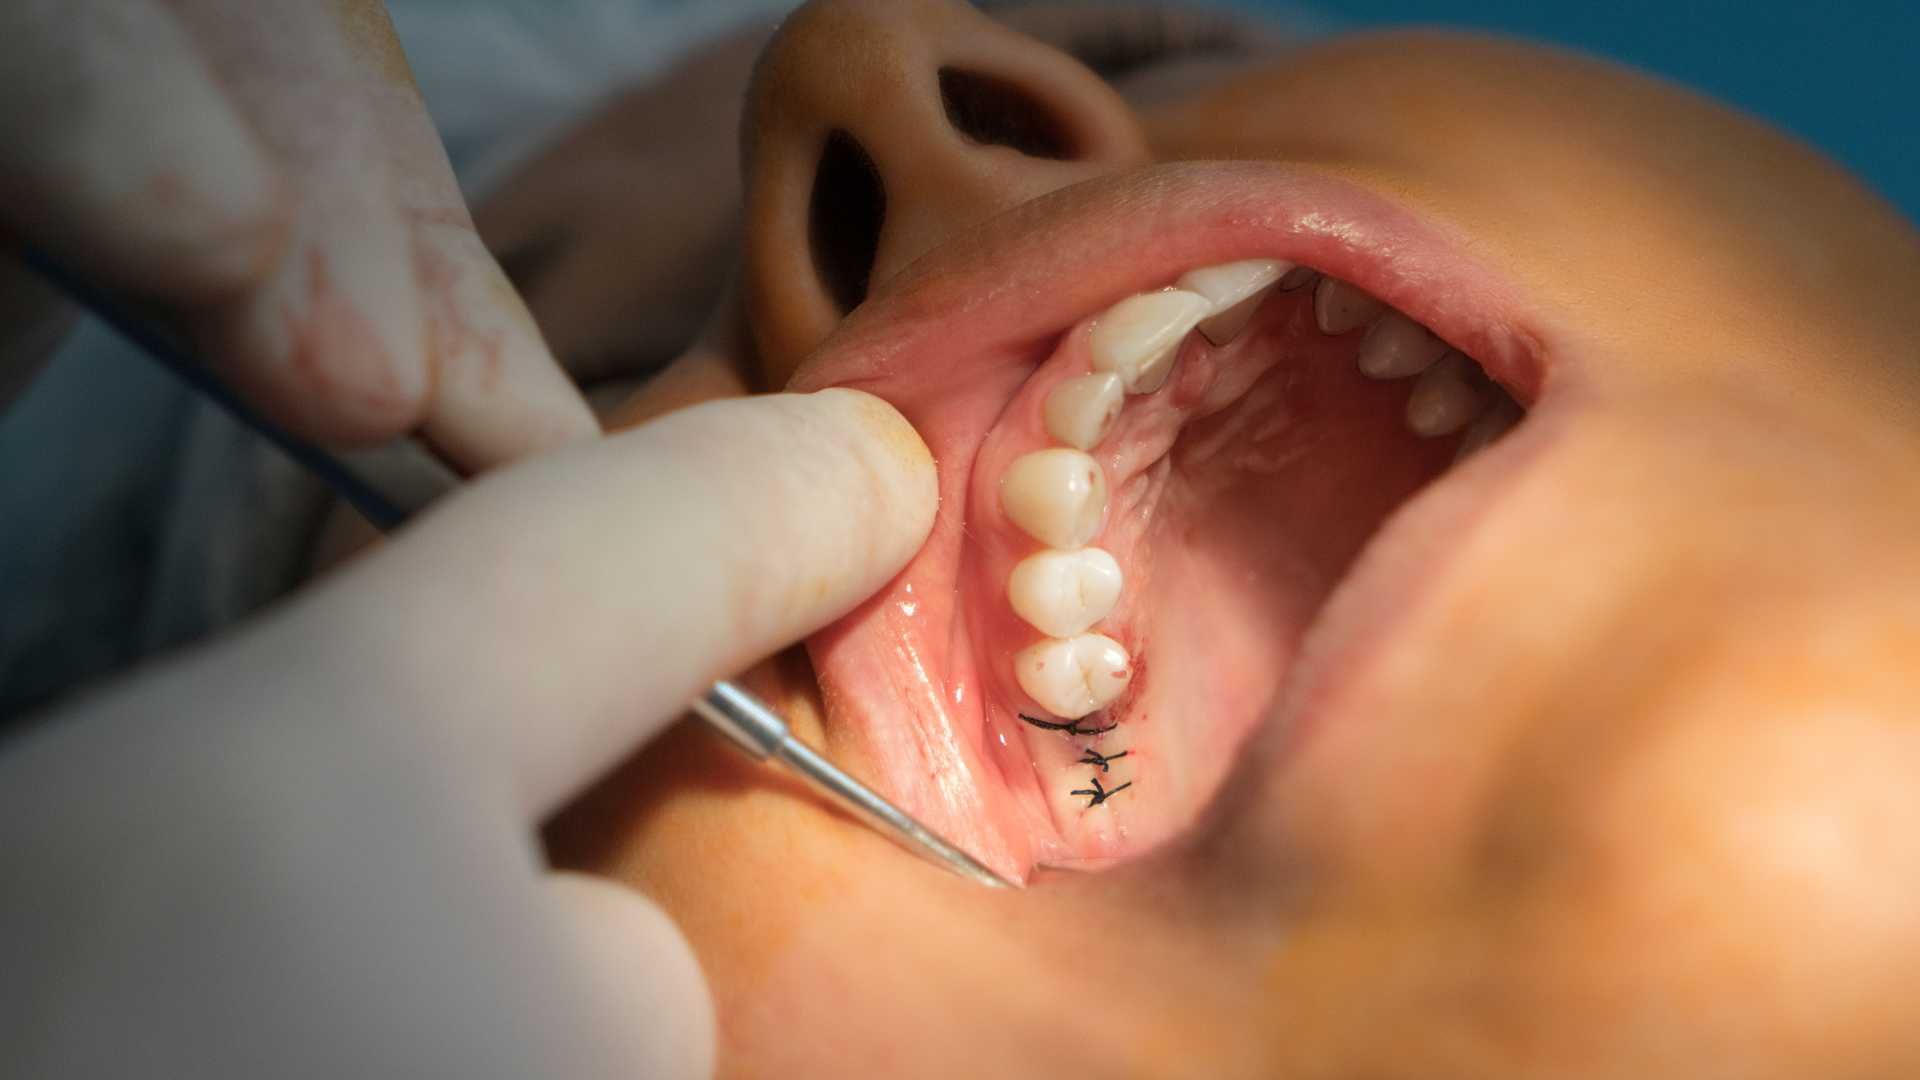 عصب کشی دندان 1 کانال دکتر کاملیا علیجانی در تهران 1